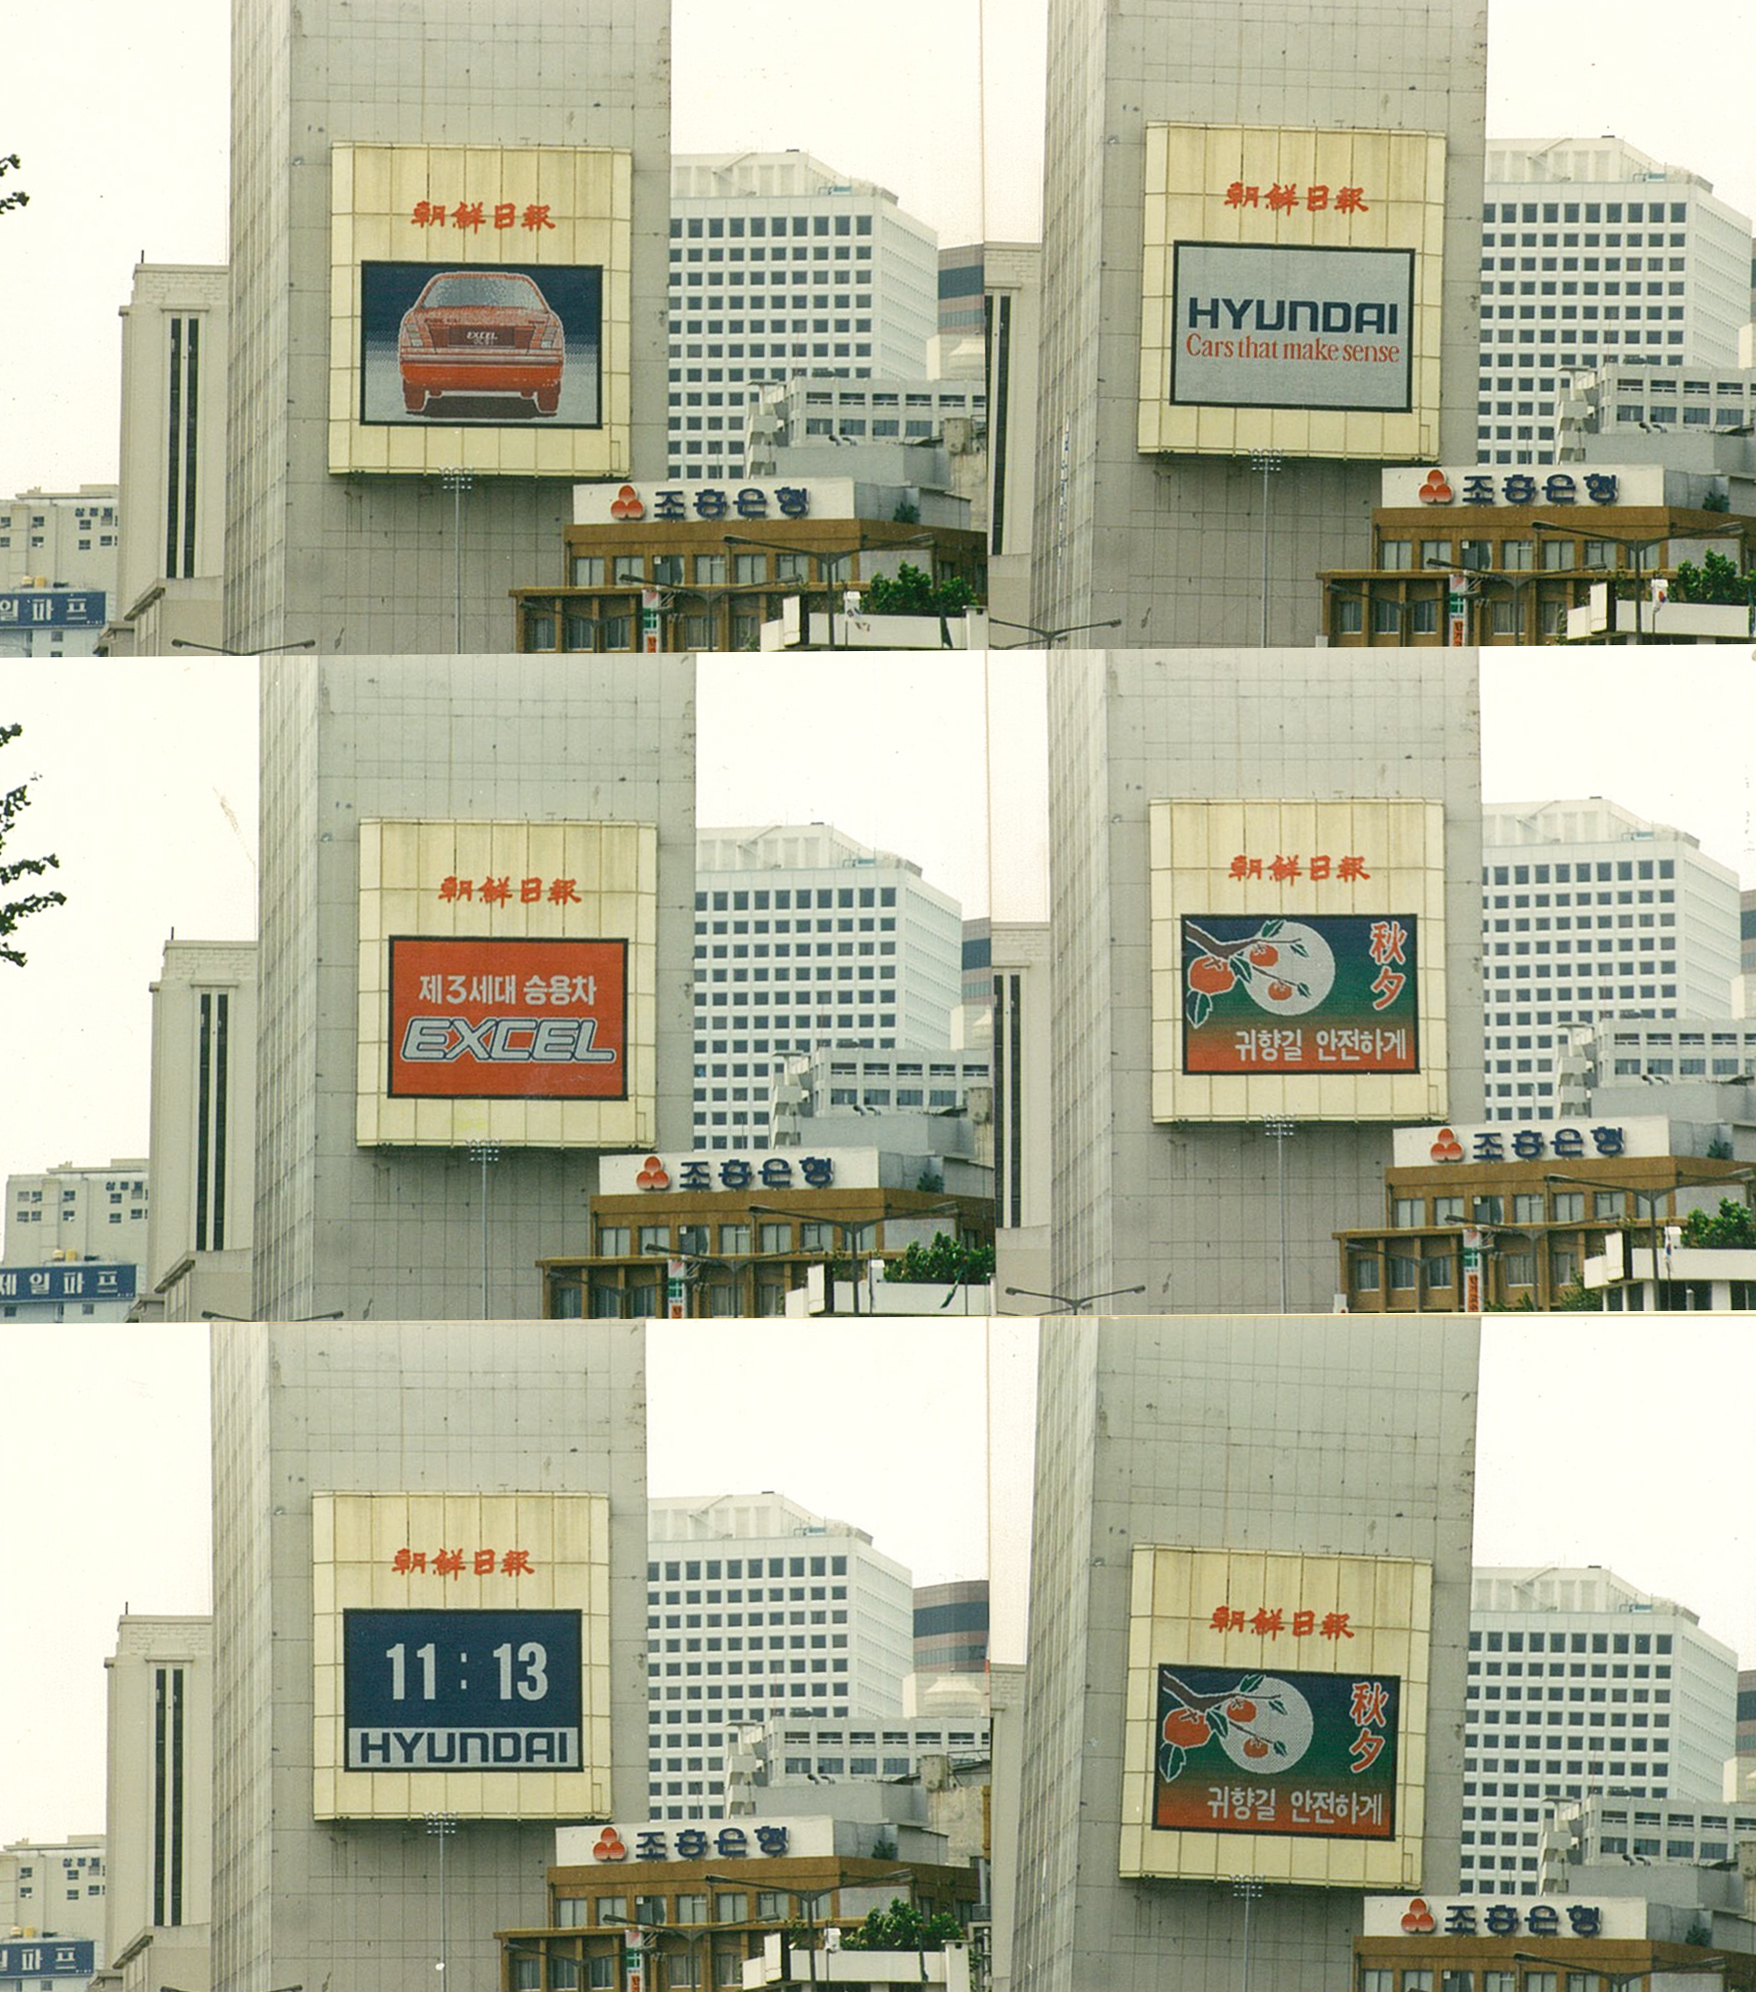 1989, 전광판 광고를 통해 송출되는 다양한 화면들